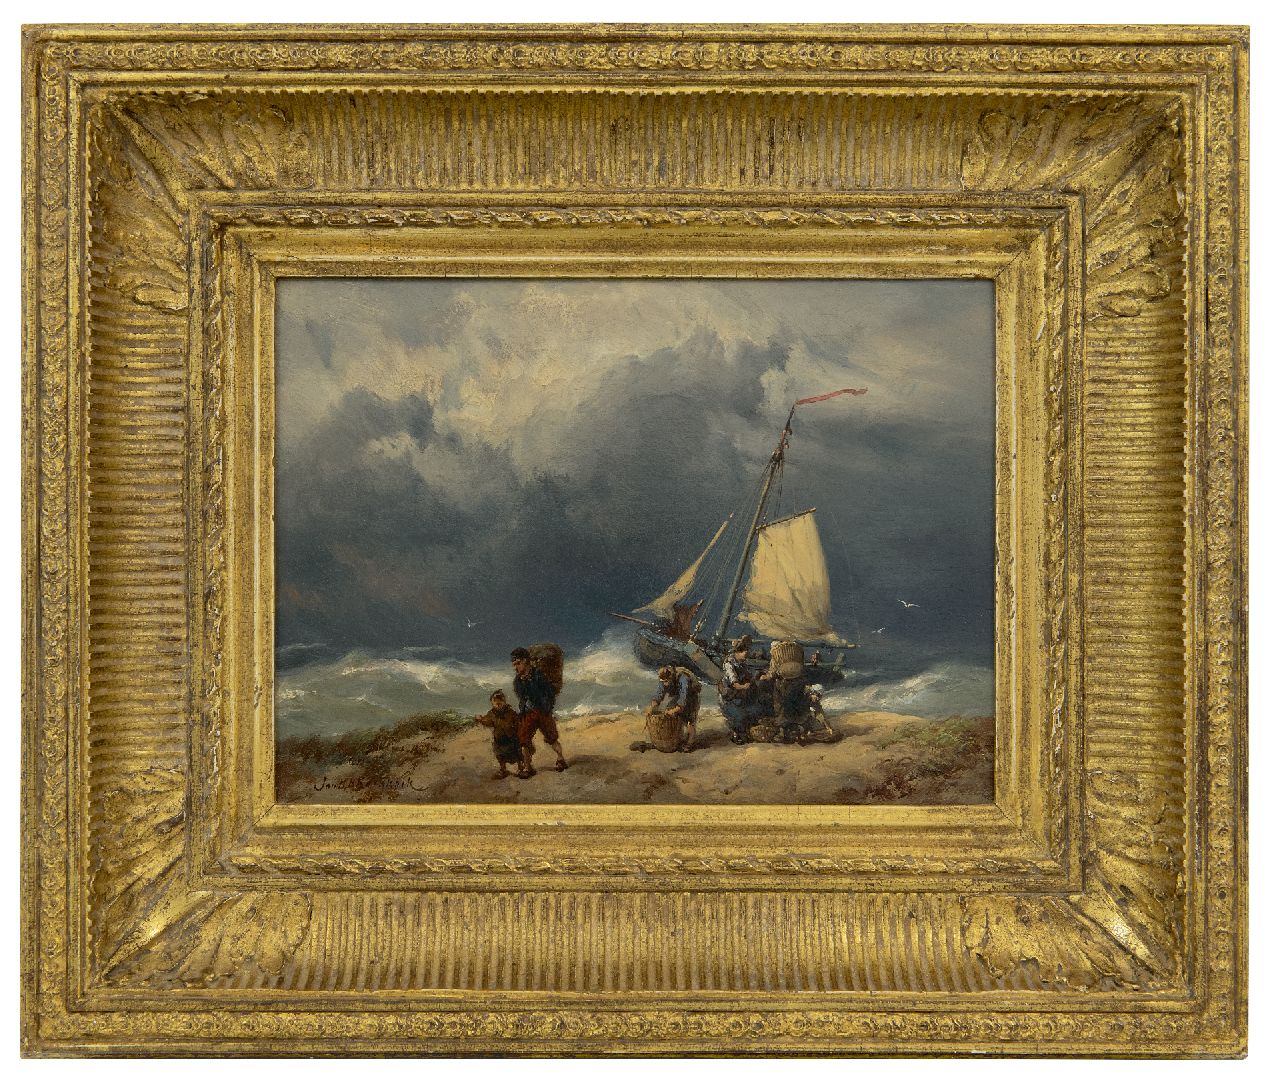 Koekkoek J.H.B.  | Johannes Hermanus Barend 'Jan H.B.' Koekkoek | Schilderijen te koop aangeboden | Vissersvolk op het strand in een storm, olieverf op paneel 17,2 x 23,4 cm, gesigneerd linksonder